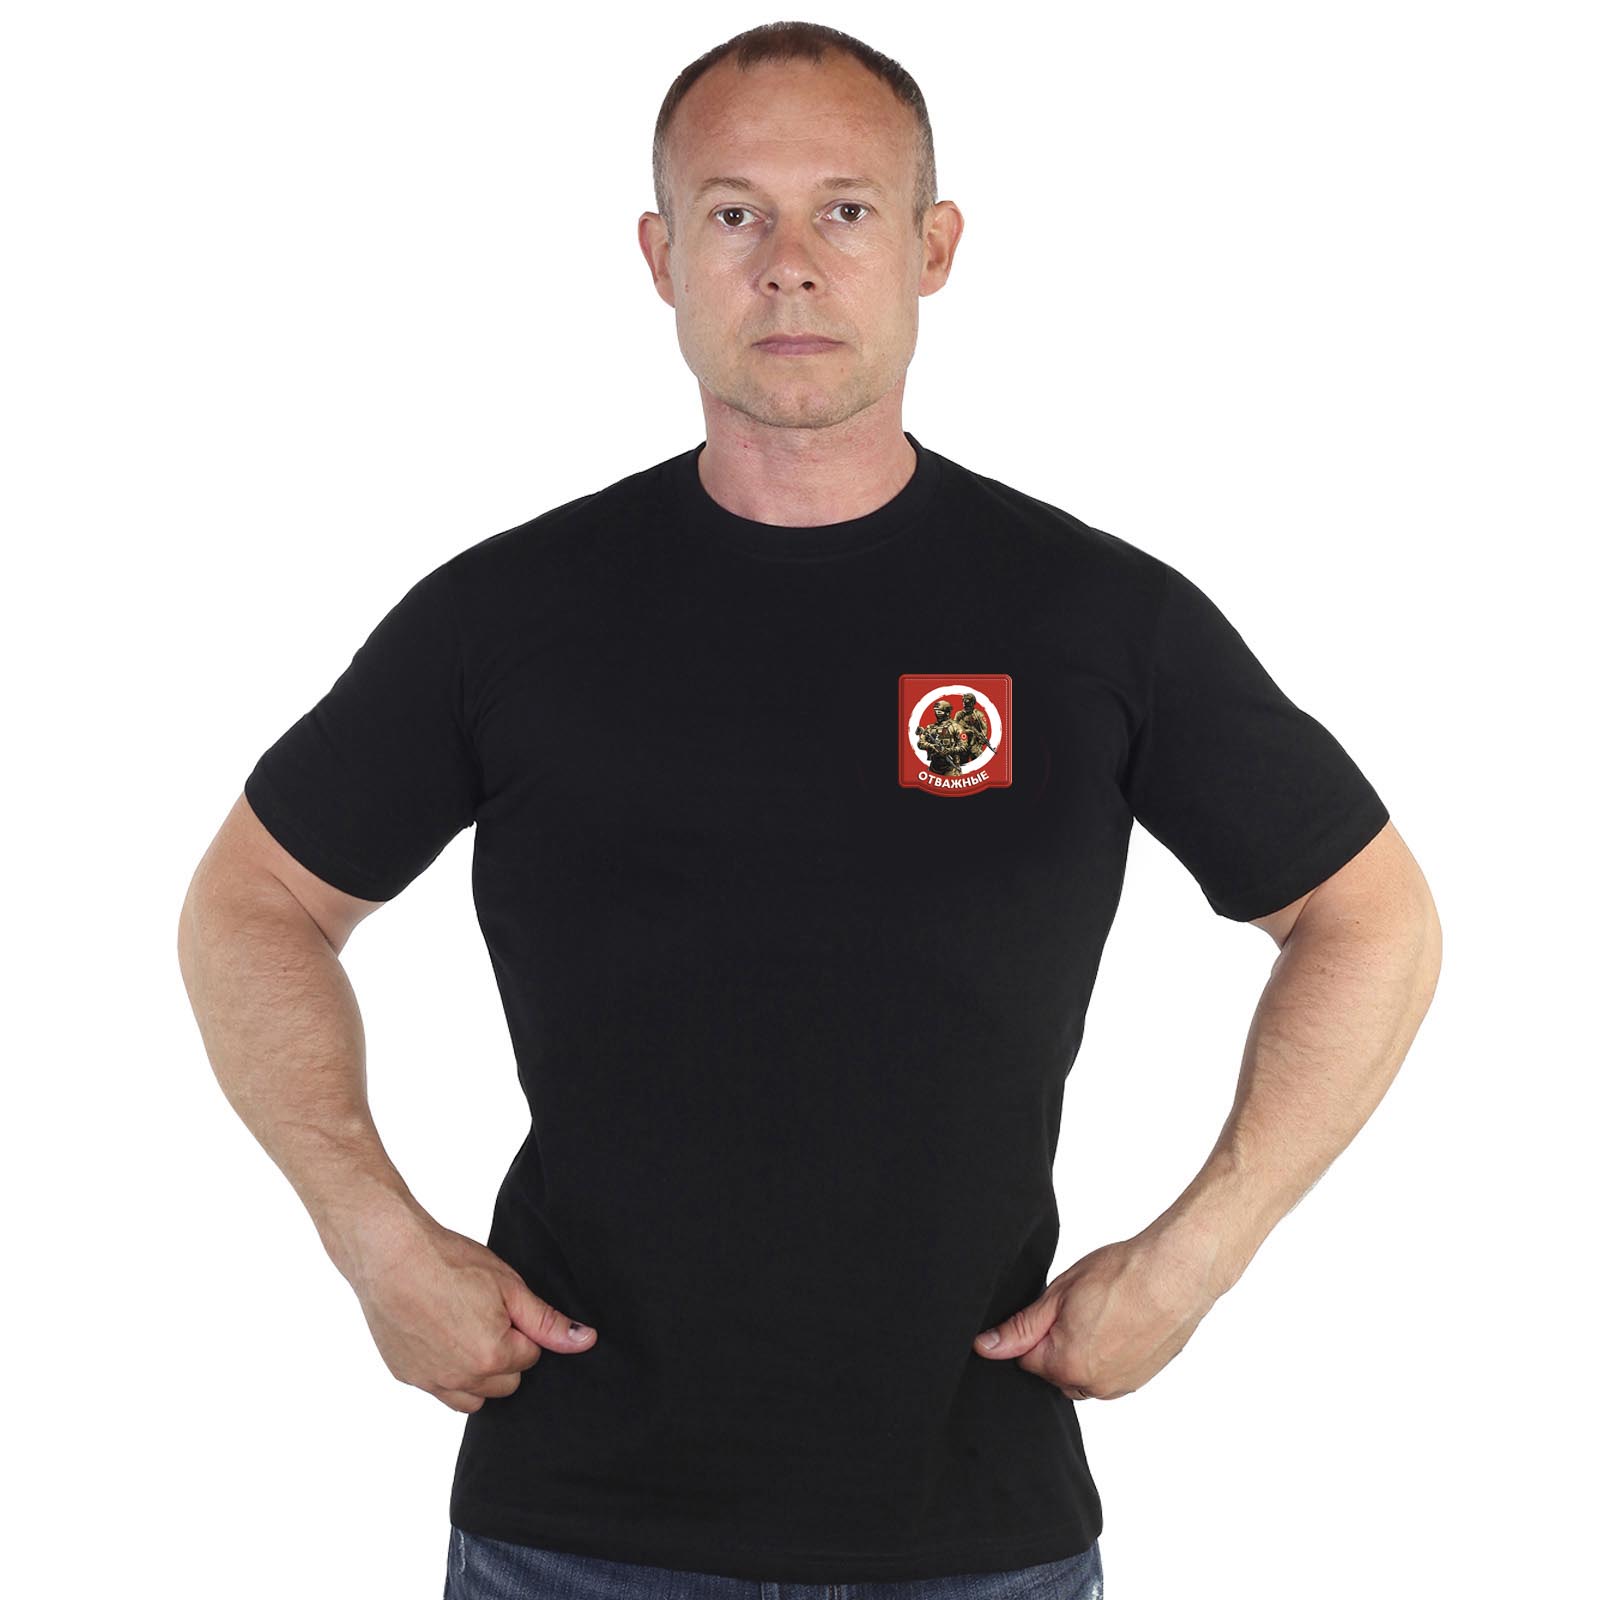 Чёрная футболка с термотрансфером "Отважные"